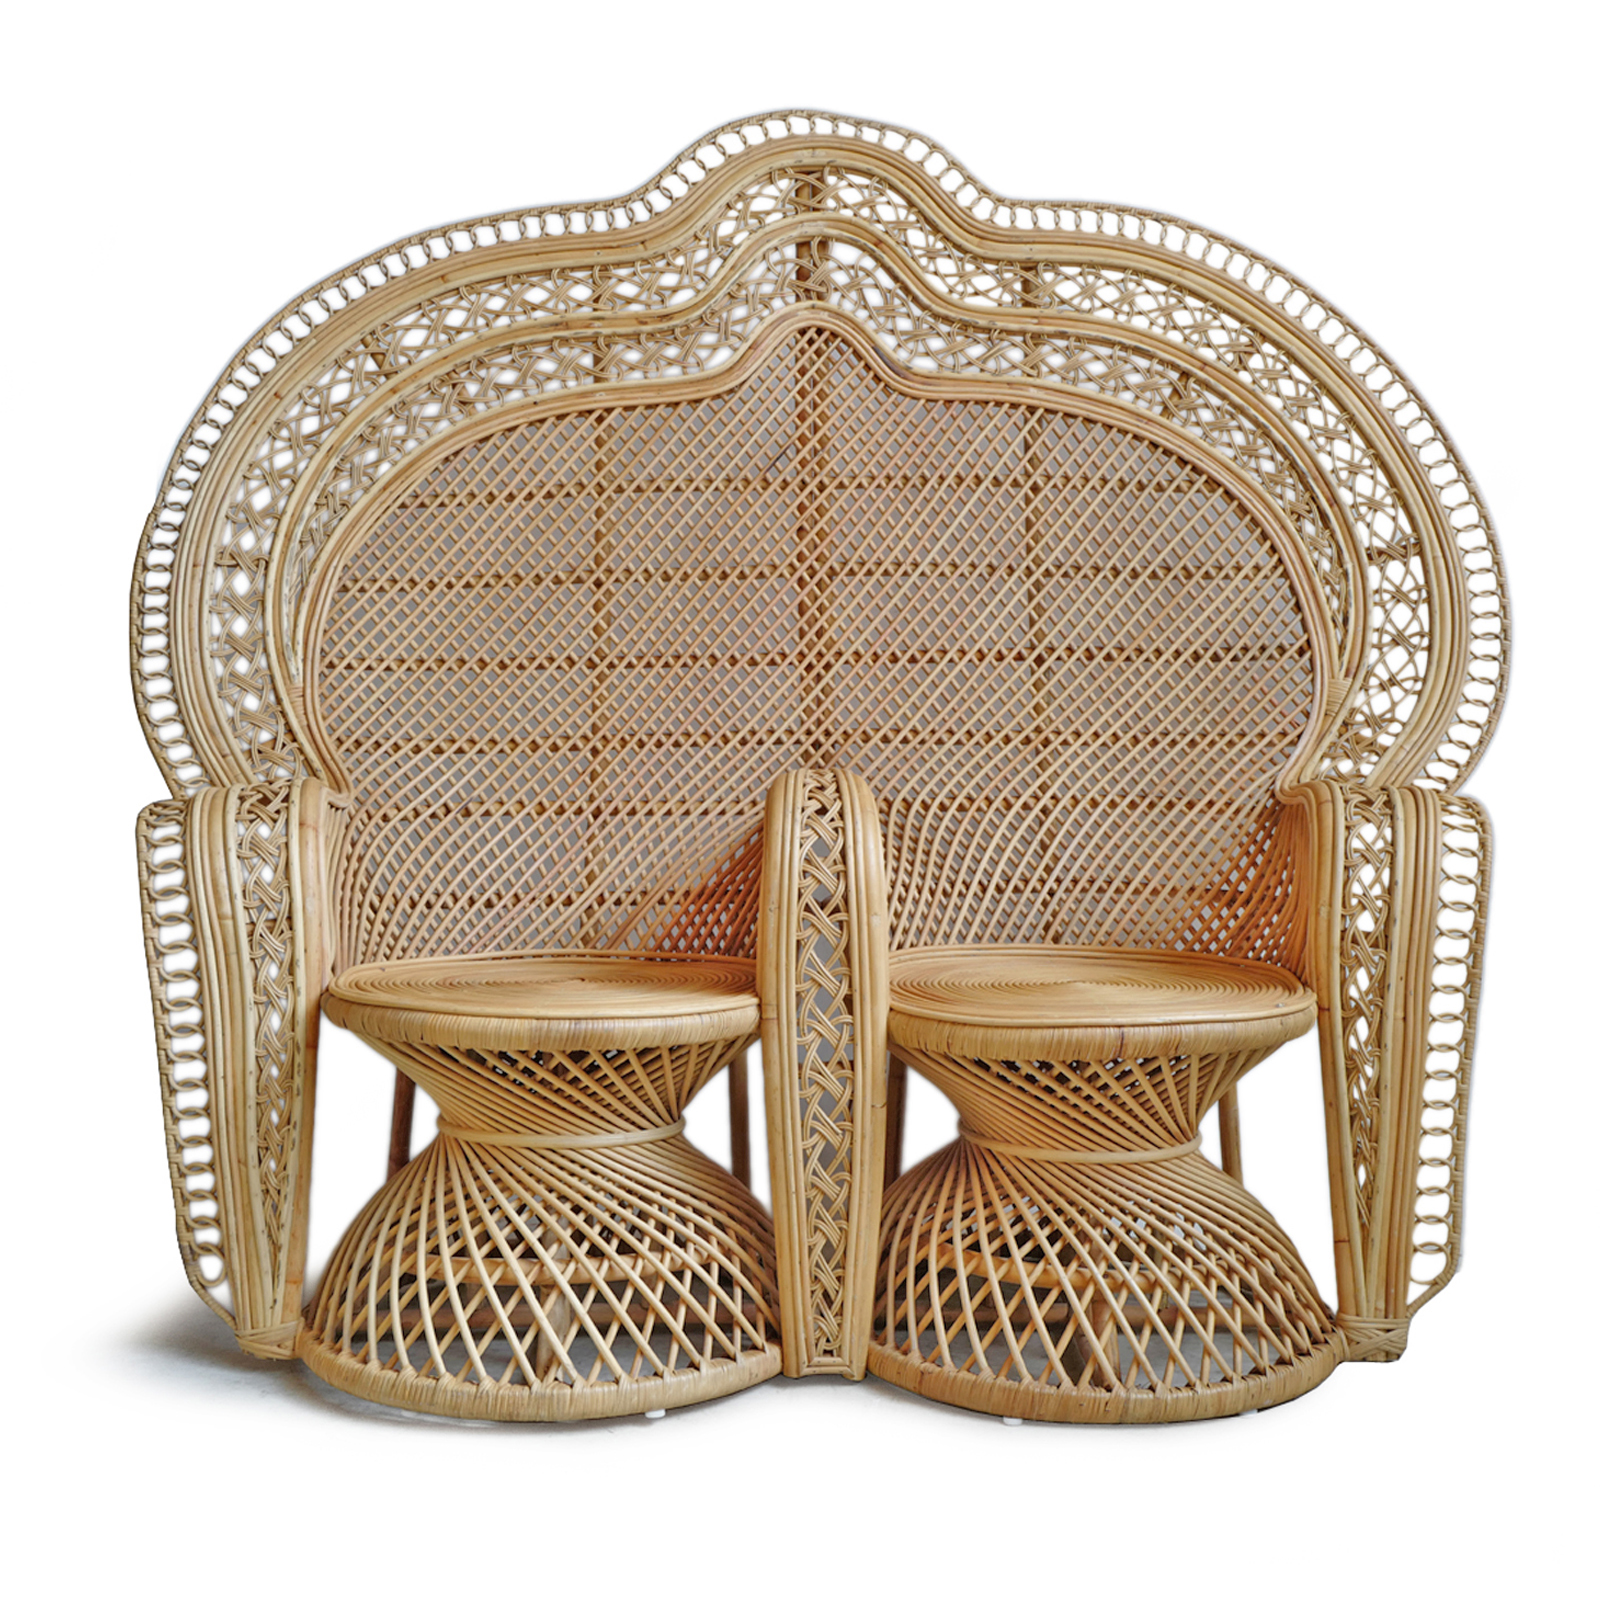 doe alstublieft niet straal Verbeteren Handmade Rattan Peacock Double Chair | AUORcrafts